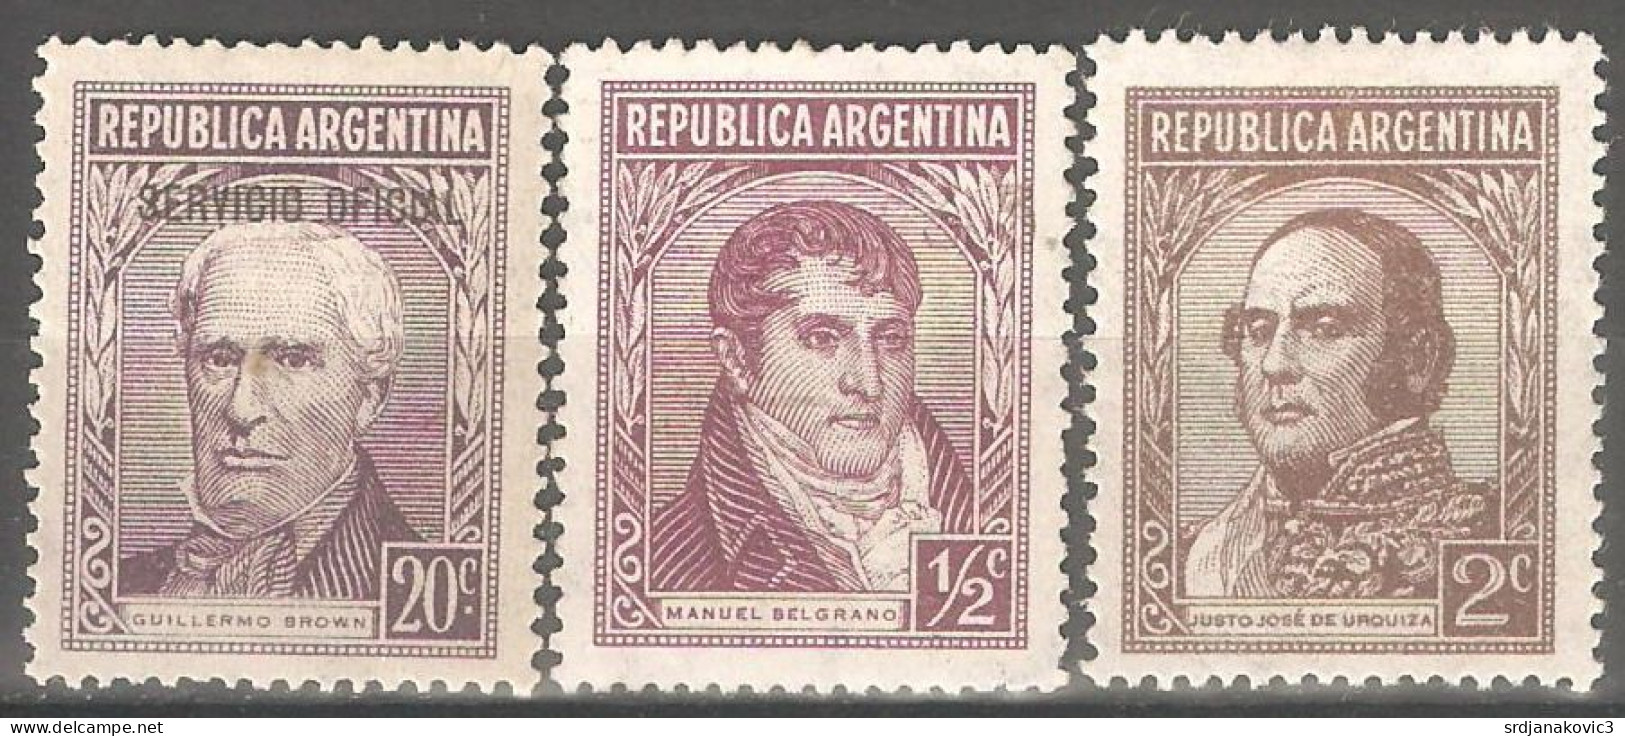 Argentina - Unused Stamps